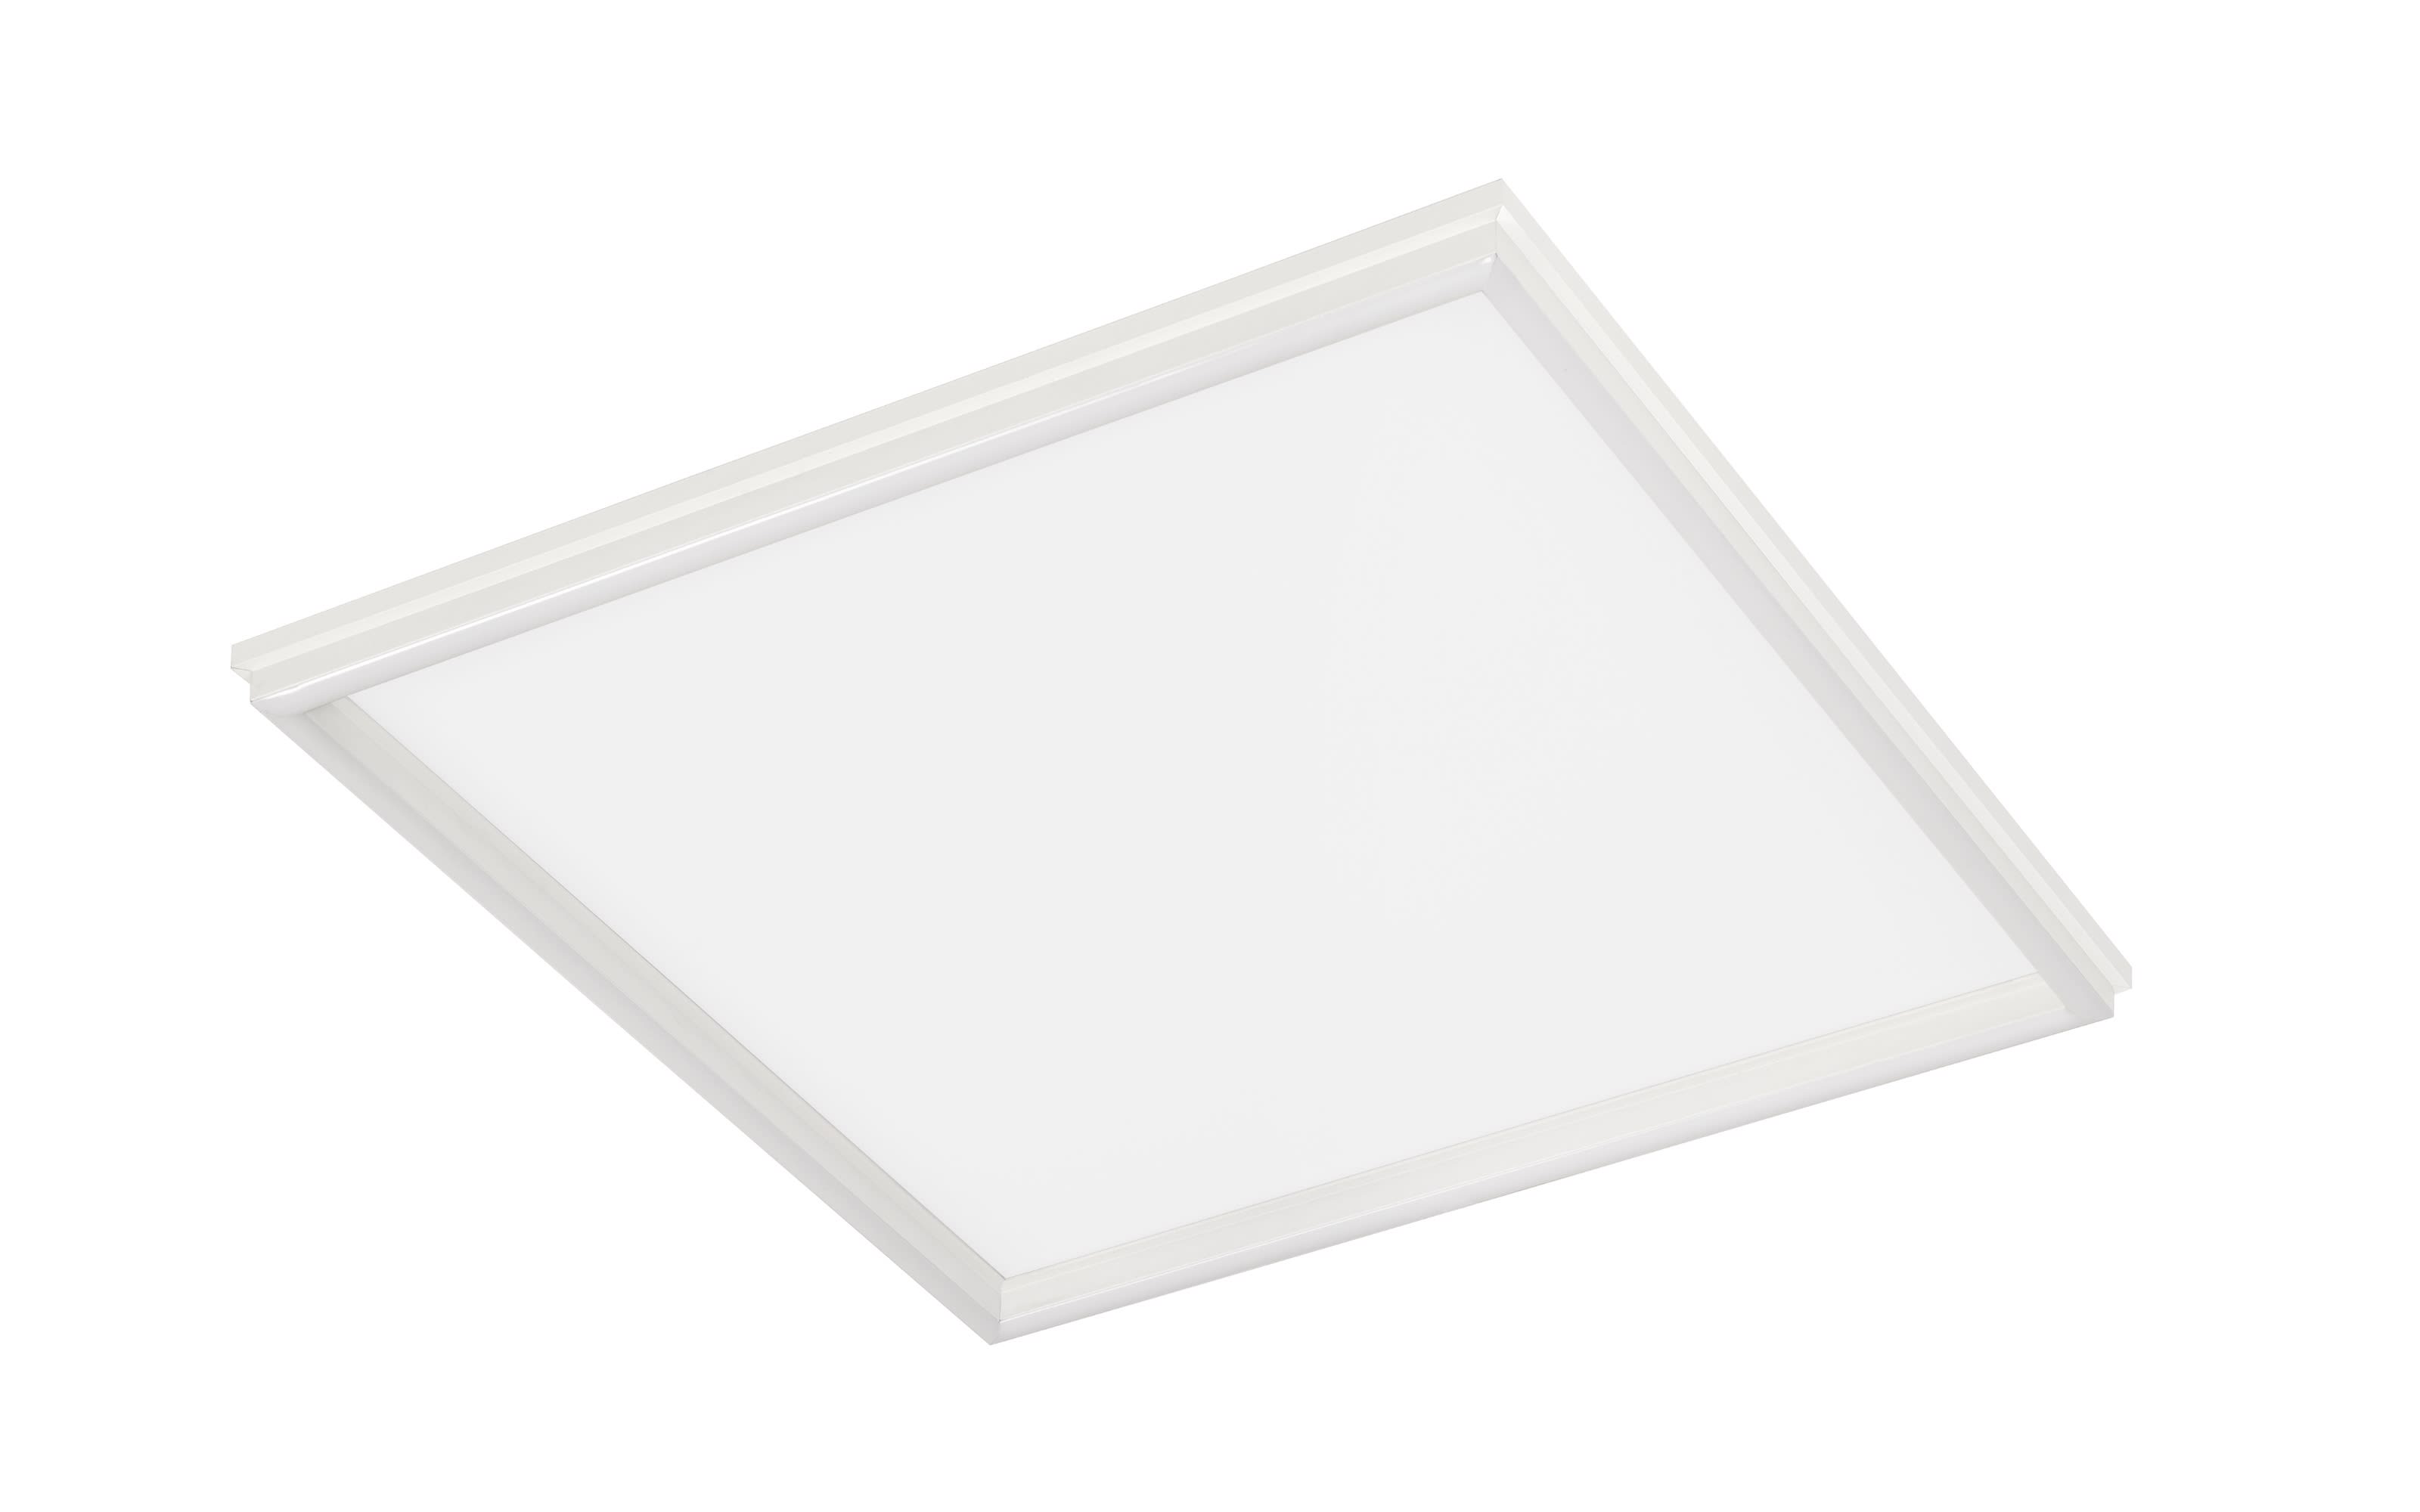 LED-Deckenleuchte Duo in weiß, 45 x 45 cm